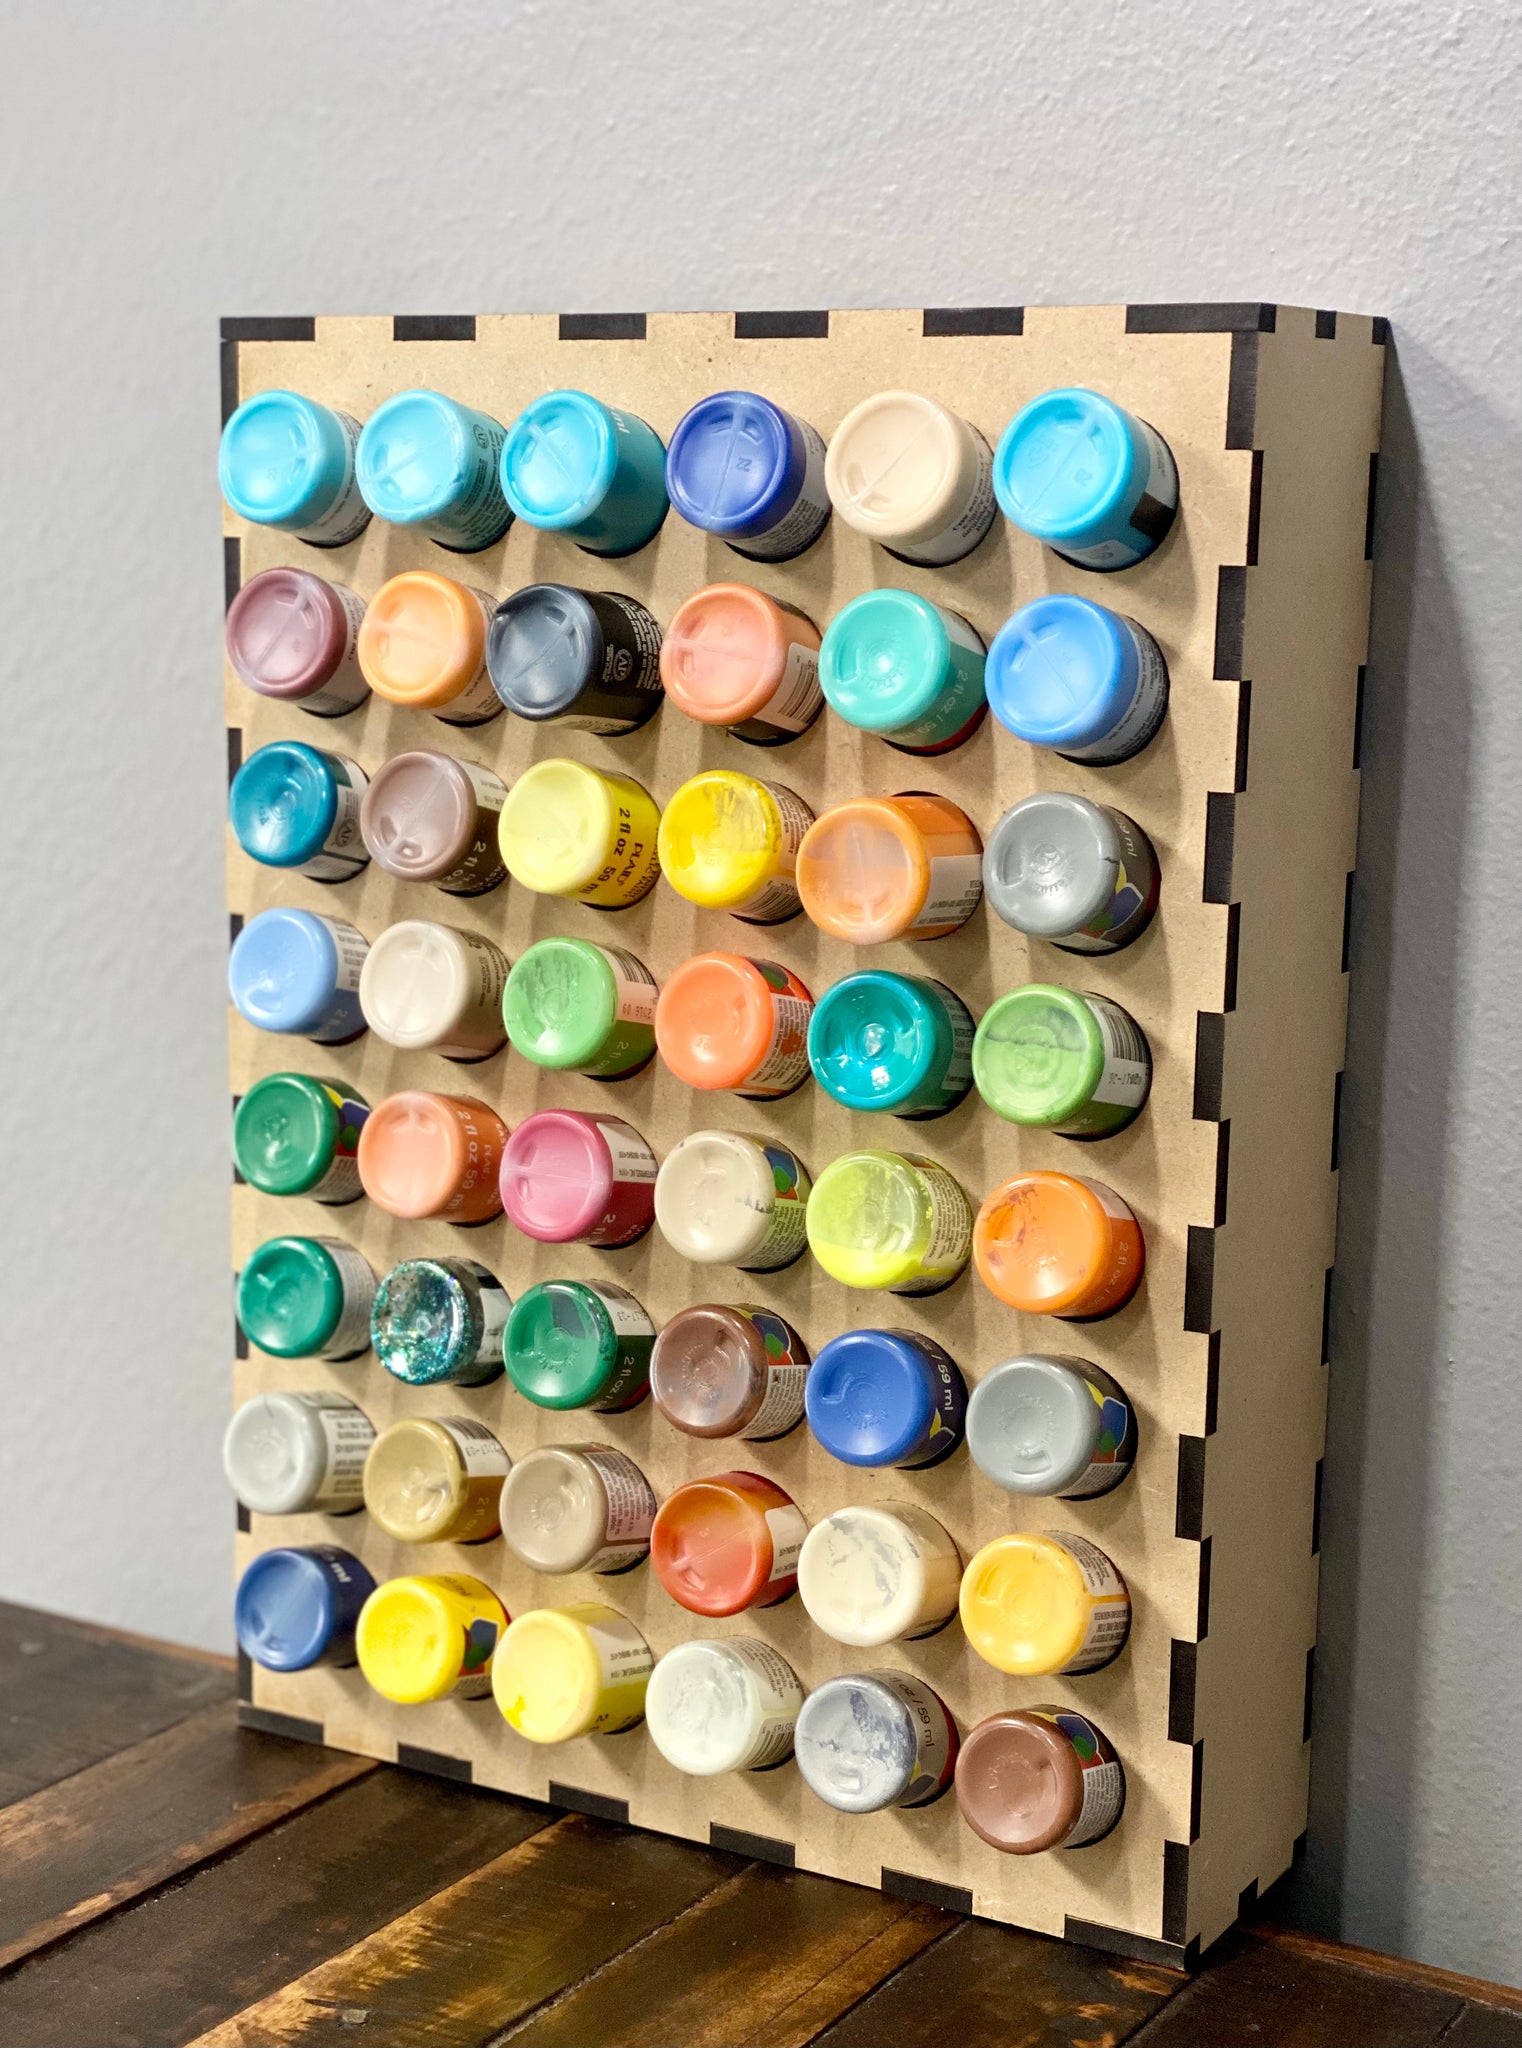 Acrylic Craft Paint Organizer, Storage for Craft Supplies Artist